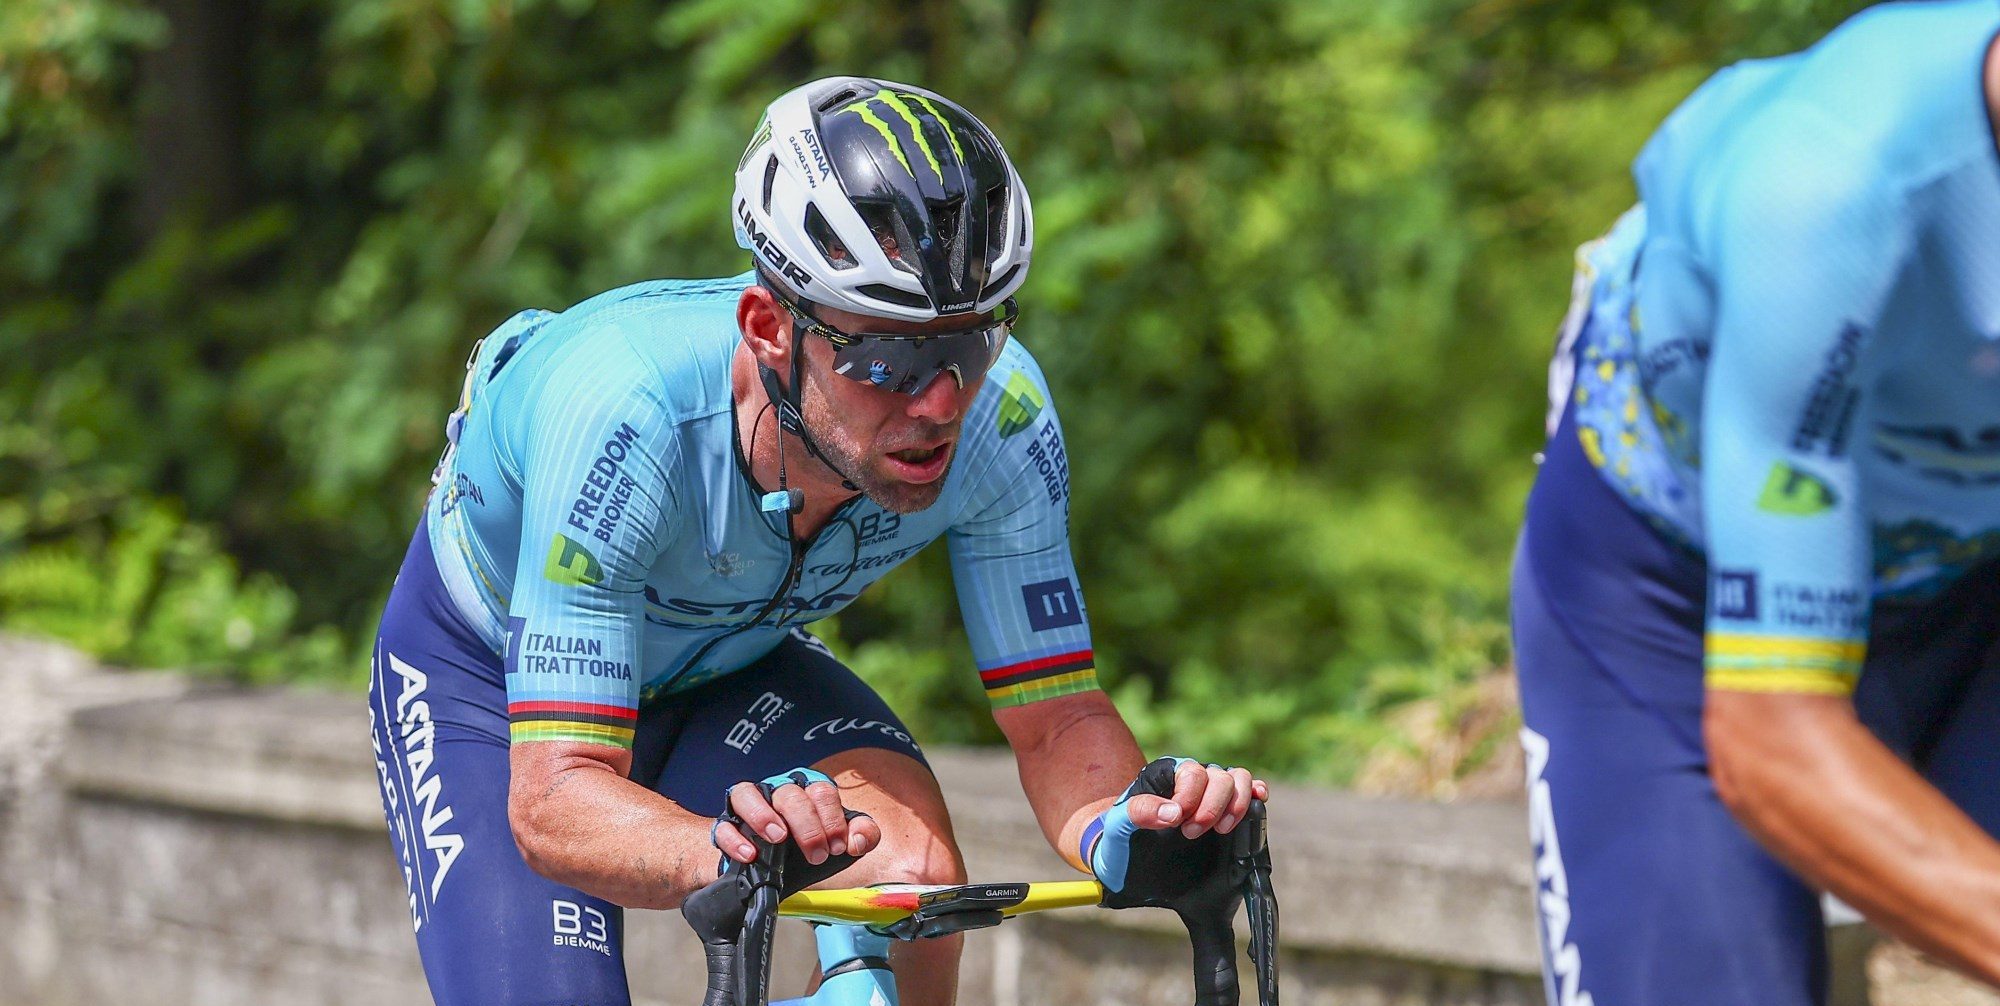 Mark Cavendish jaagt op ritzege 35 in Turijn: “Had graag met frissere benen gesprint”